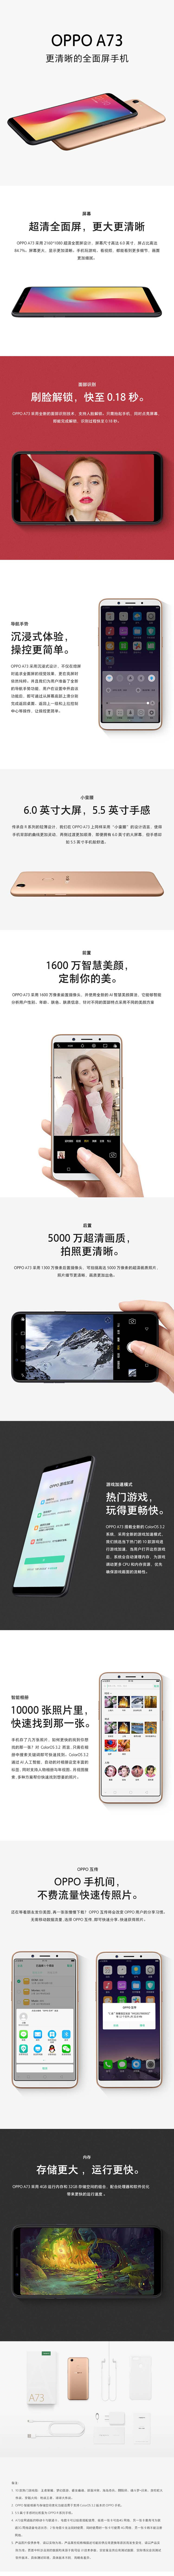 【湖南馆】OPPO A73 全面屏拍照手机 4GB+32GB 黑色 全网通